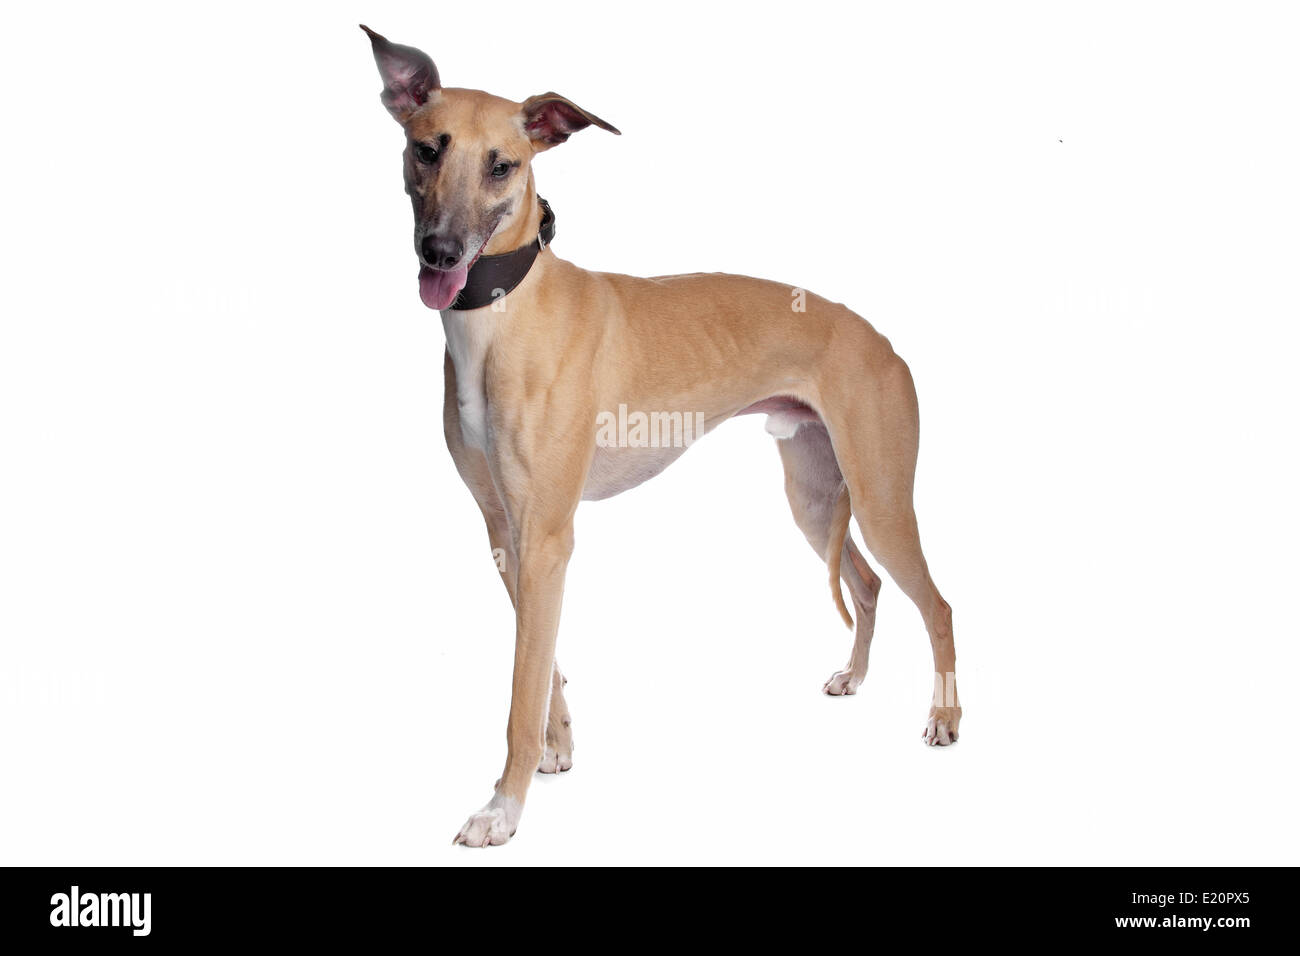 Greyhound, Whippet, Galgo dog Stock Photo